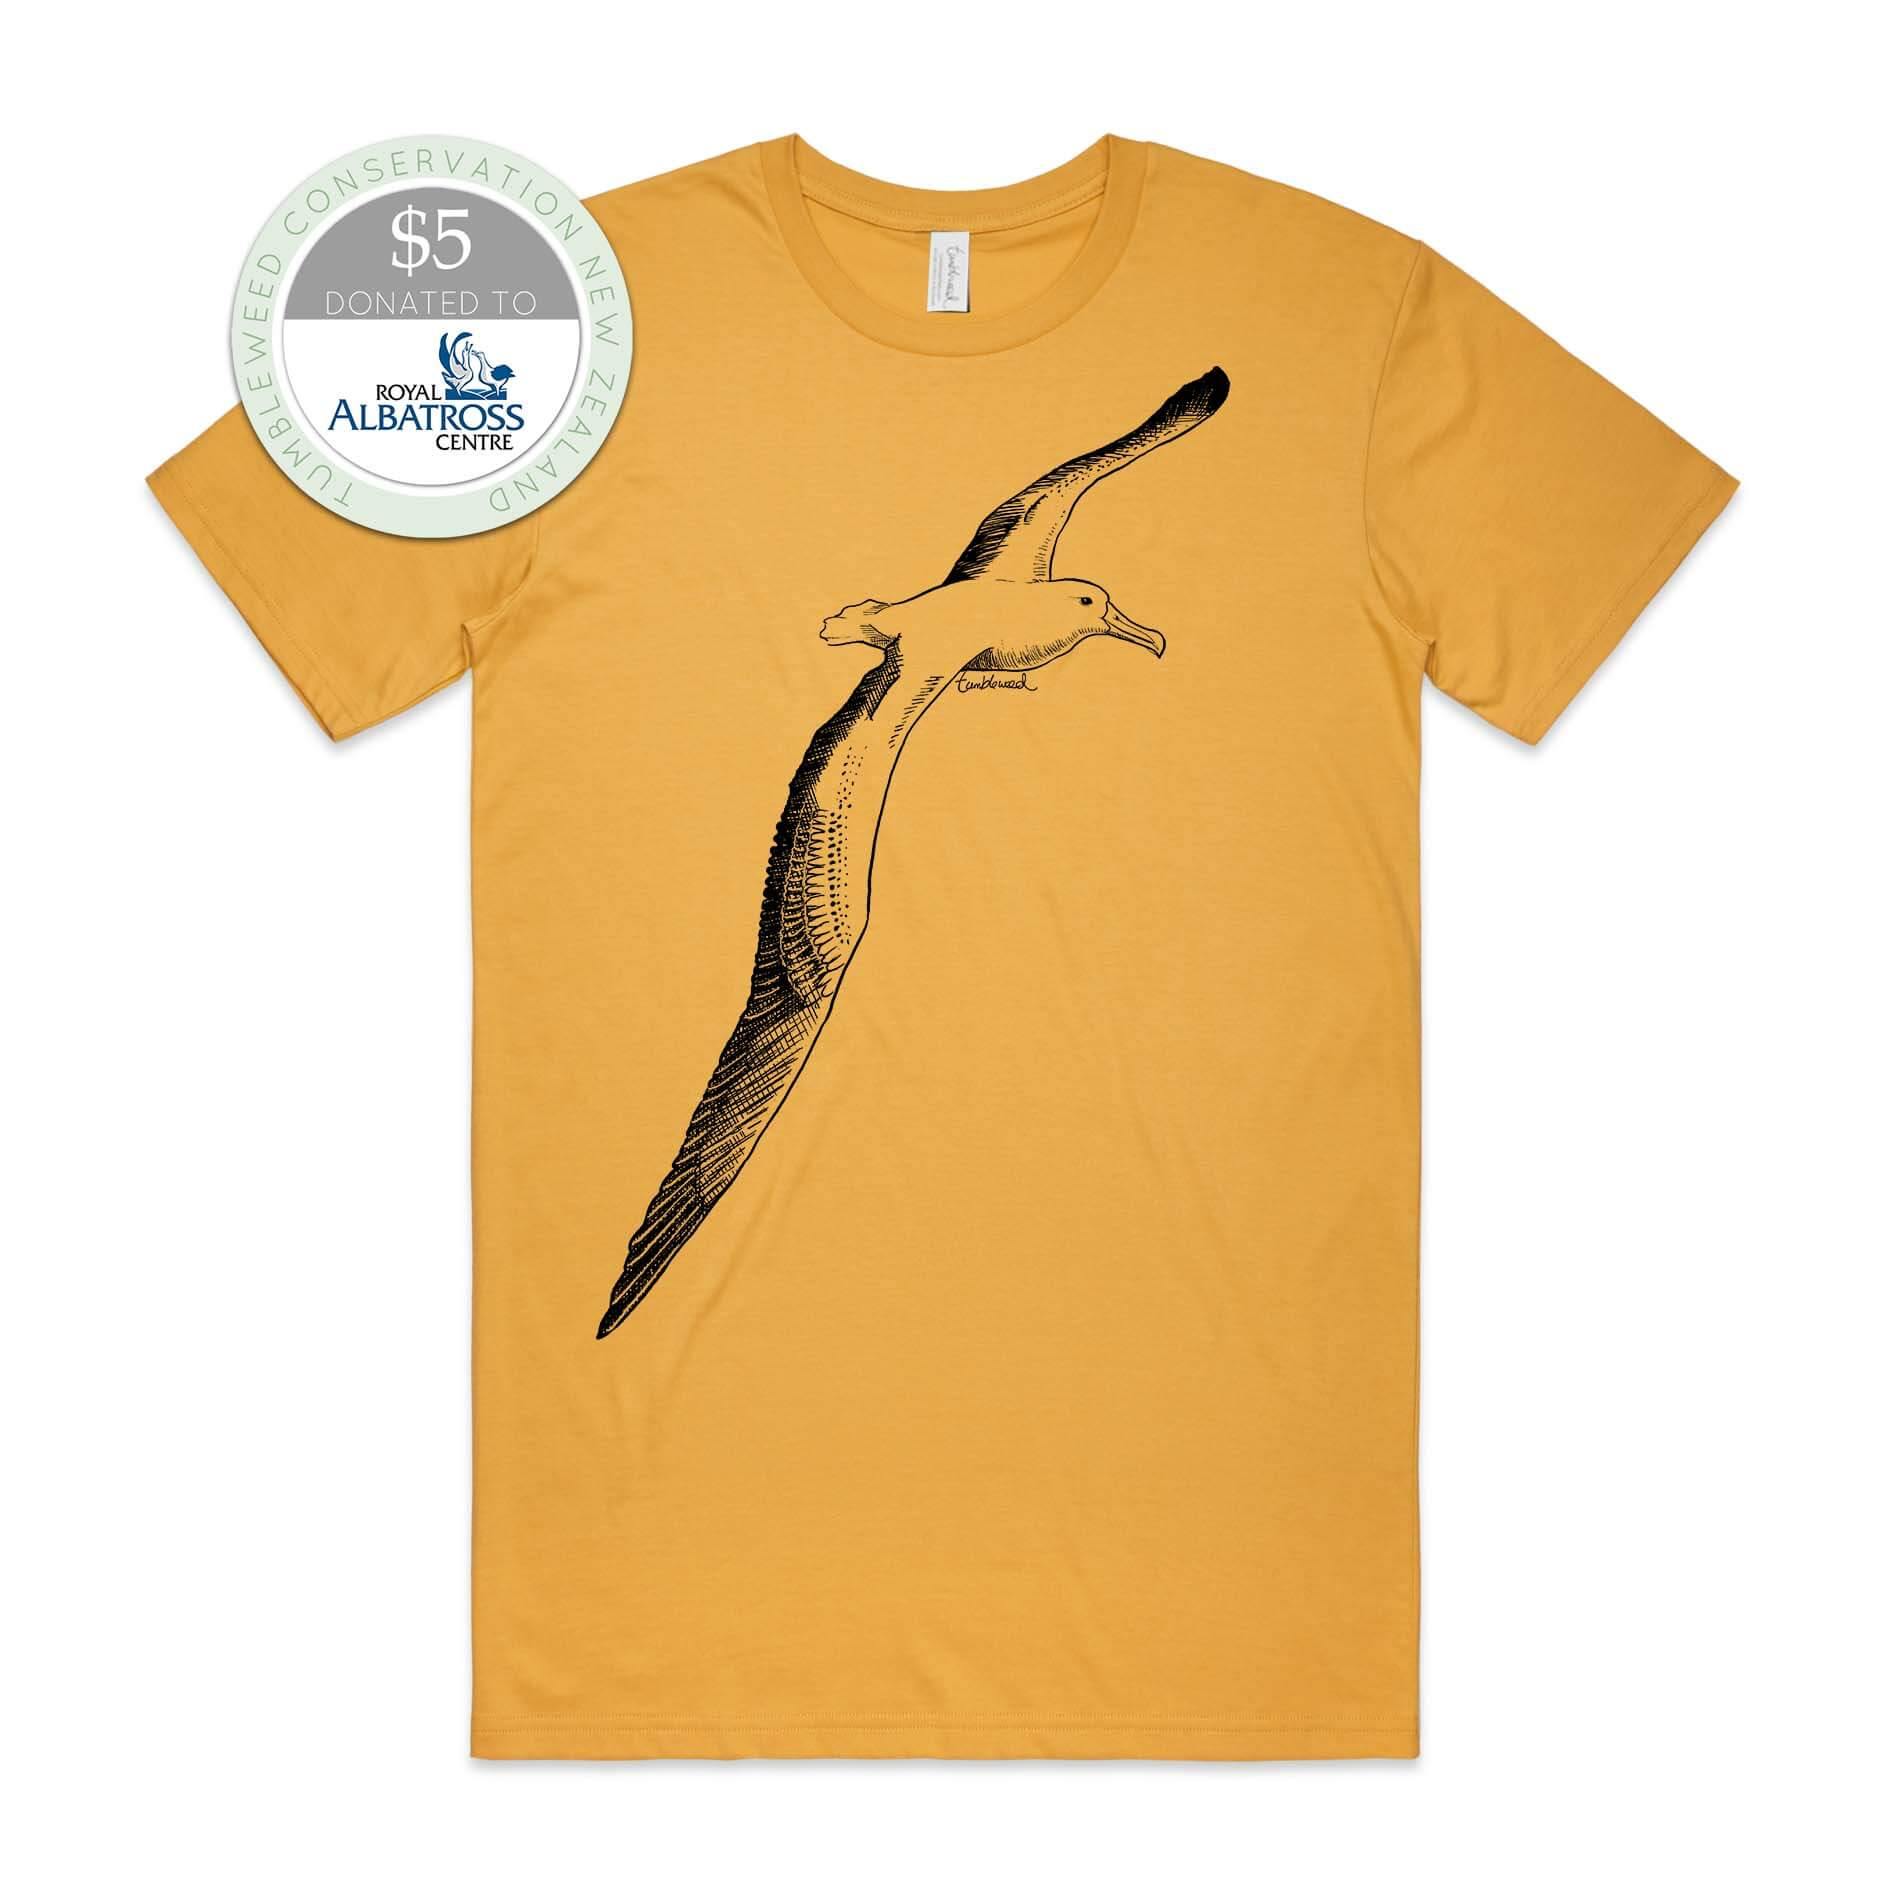 Mustard, male t-shirt featuring a screen printed albatross design.